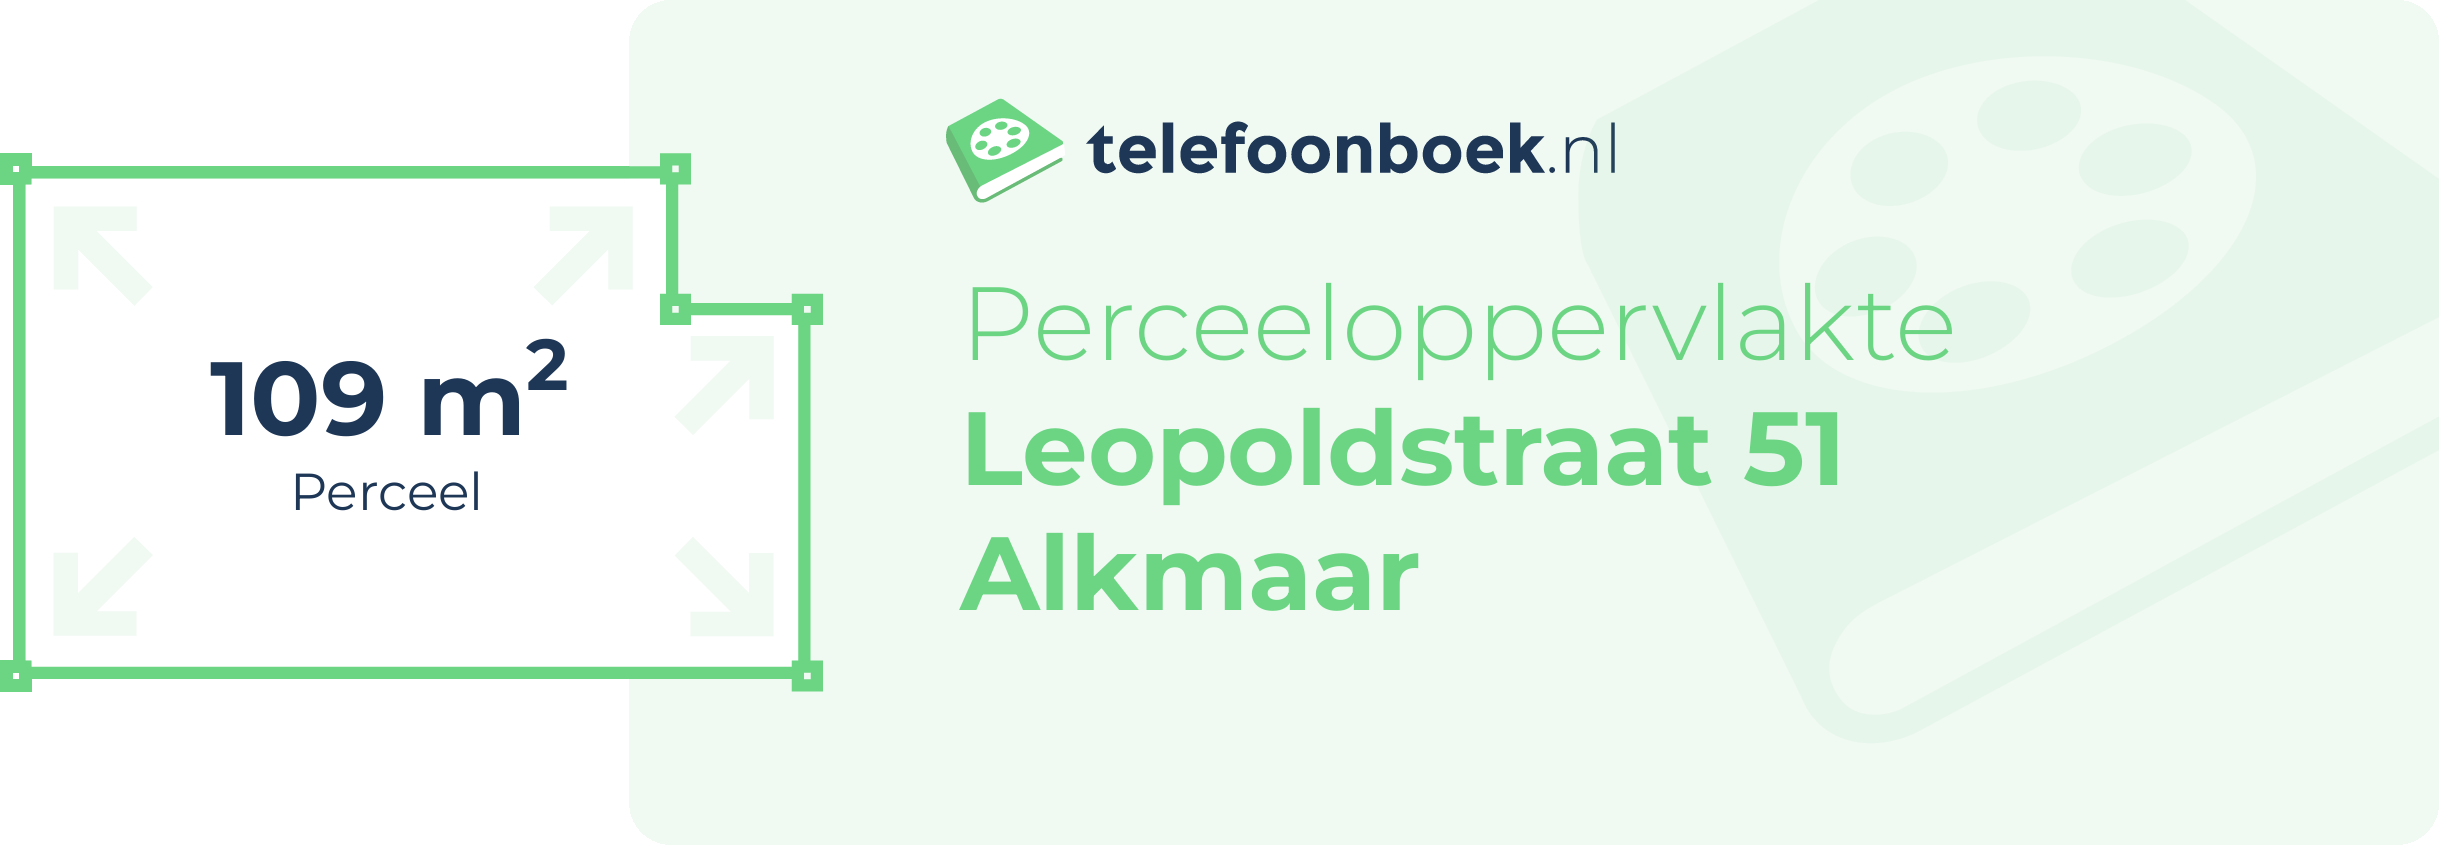 Perceeloppervlakte Leopoldstraat 51 Alkmaar